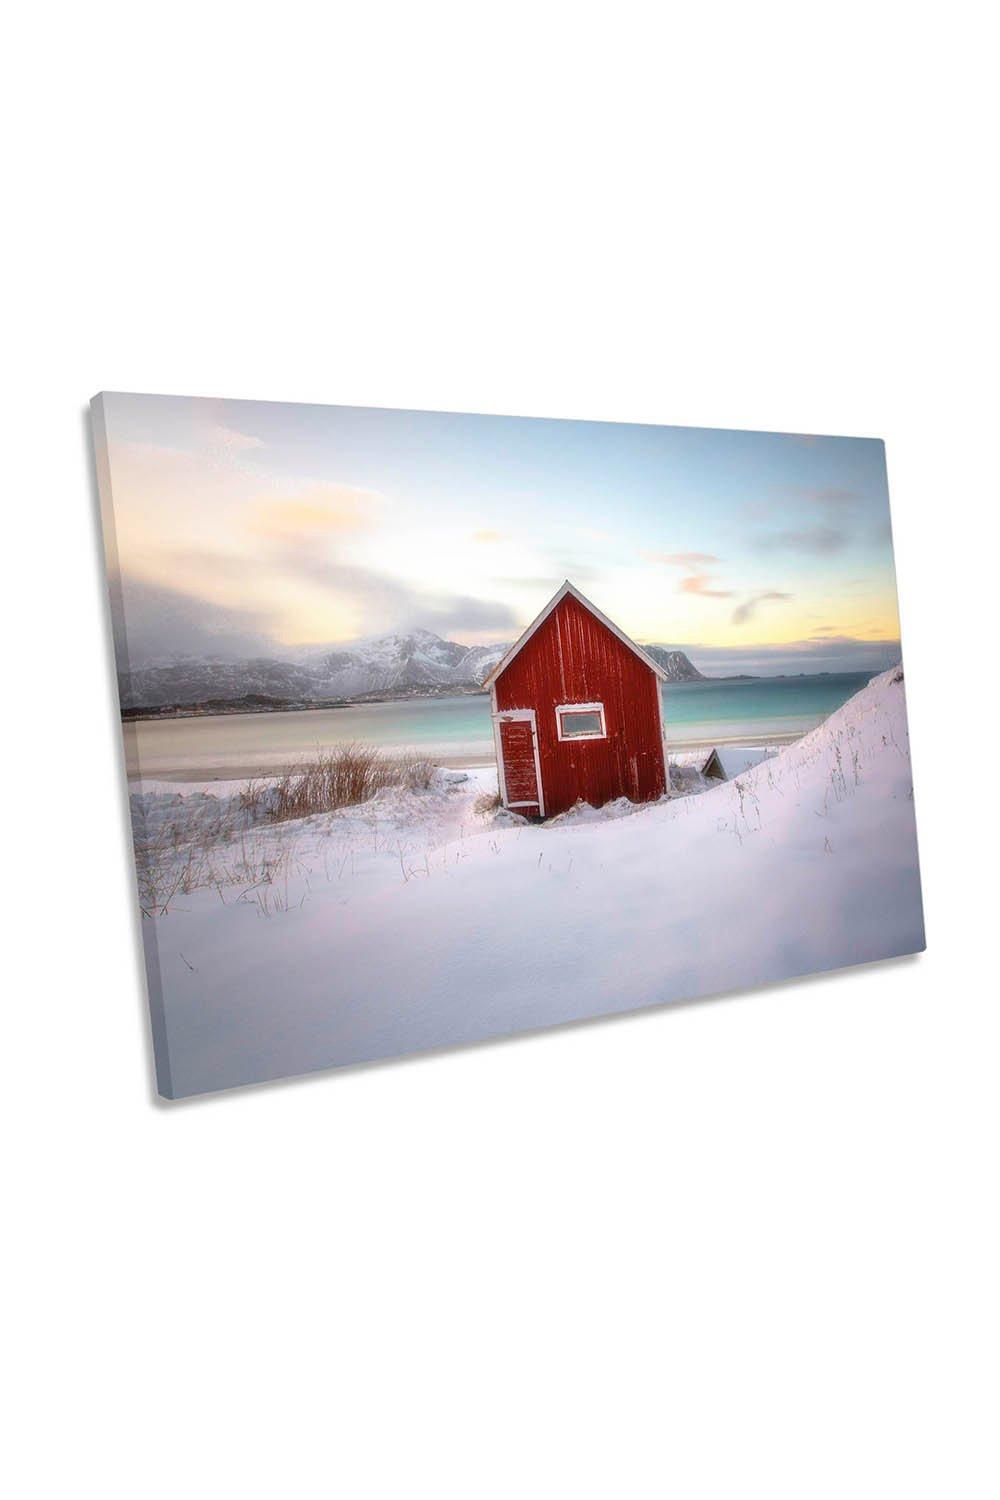 Under an Arctic Sky Snow Cottage Landscape Canvas Wall Art Picture Print